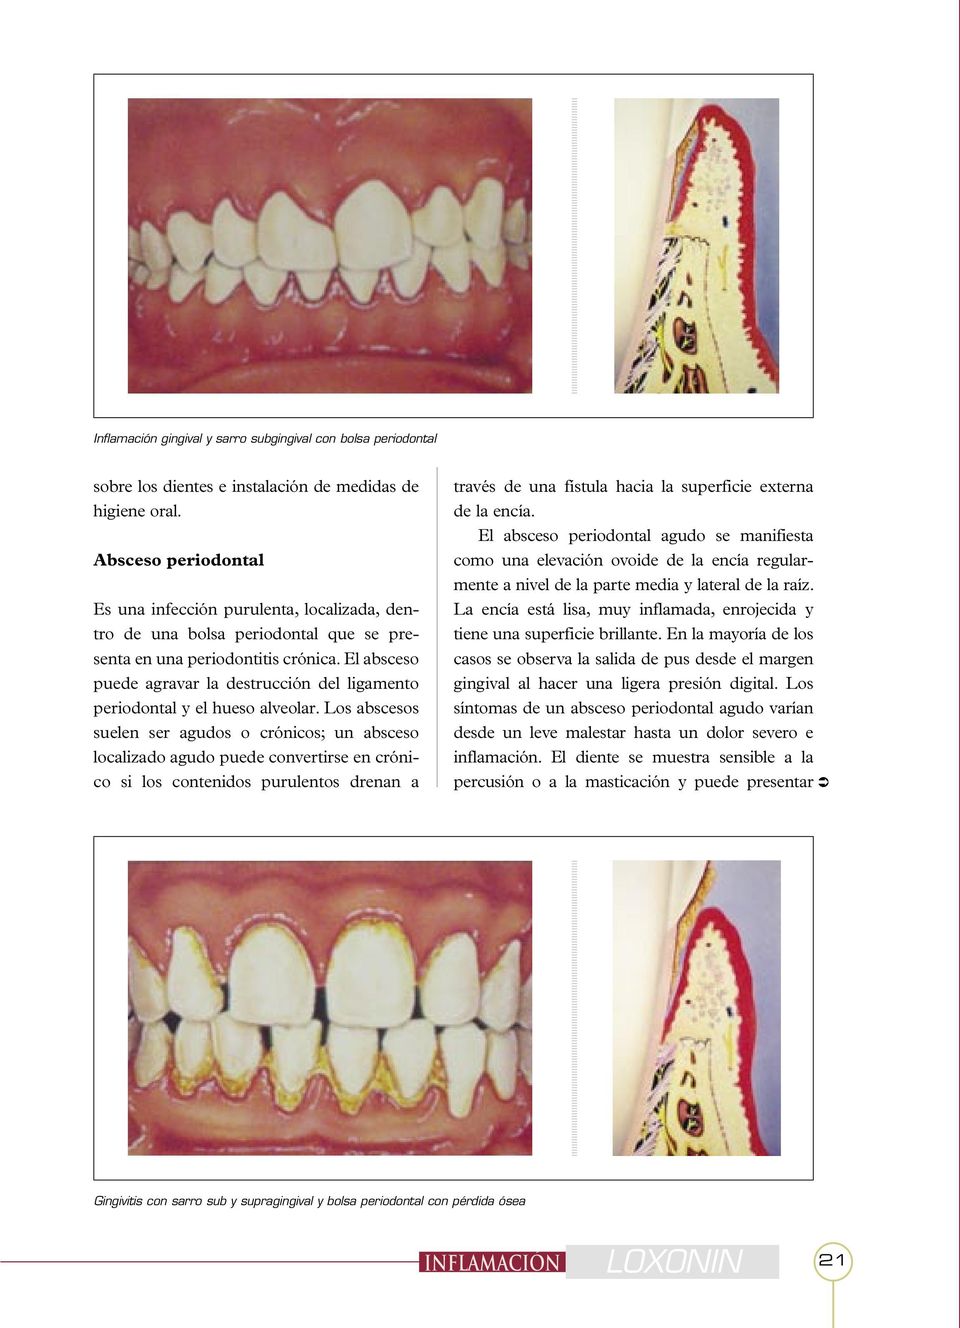 El absceso puede agravar la destrucción del ligamento periodontal y el hueso alveolar.